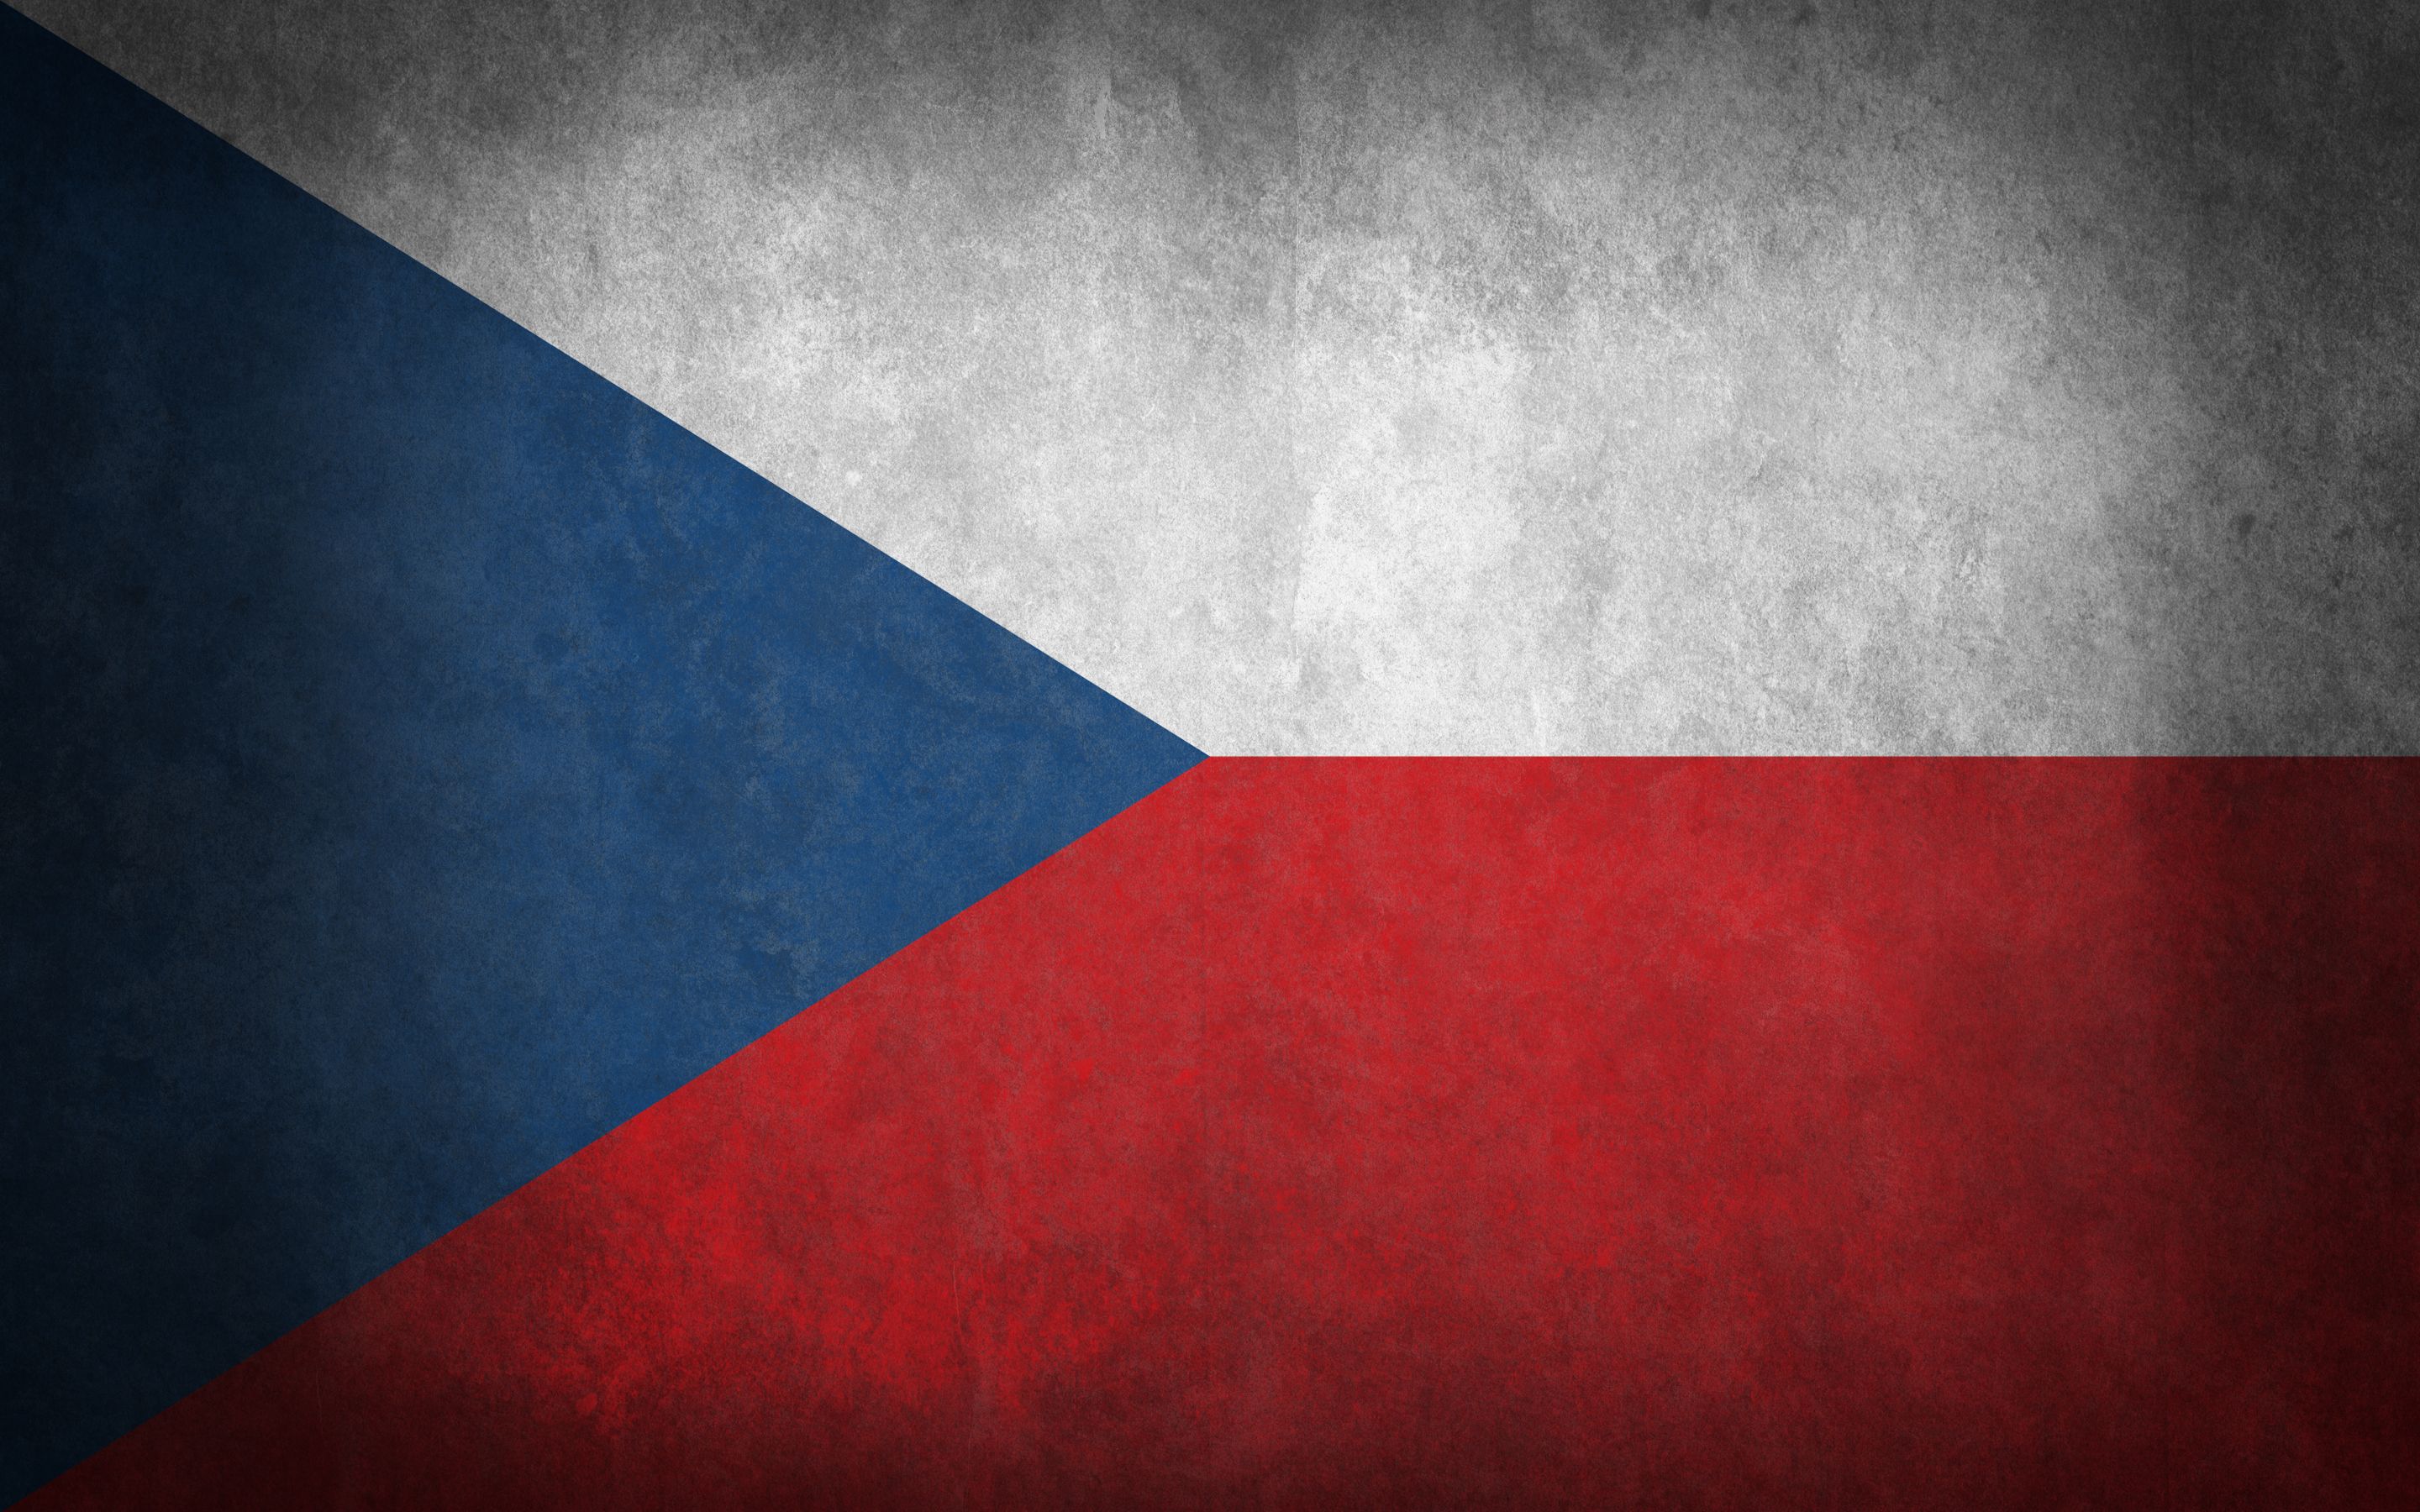 Скачать обои Флаг Чешской Республики на телефон бесплатно